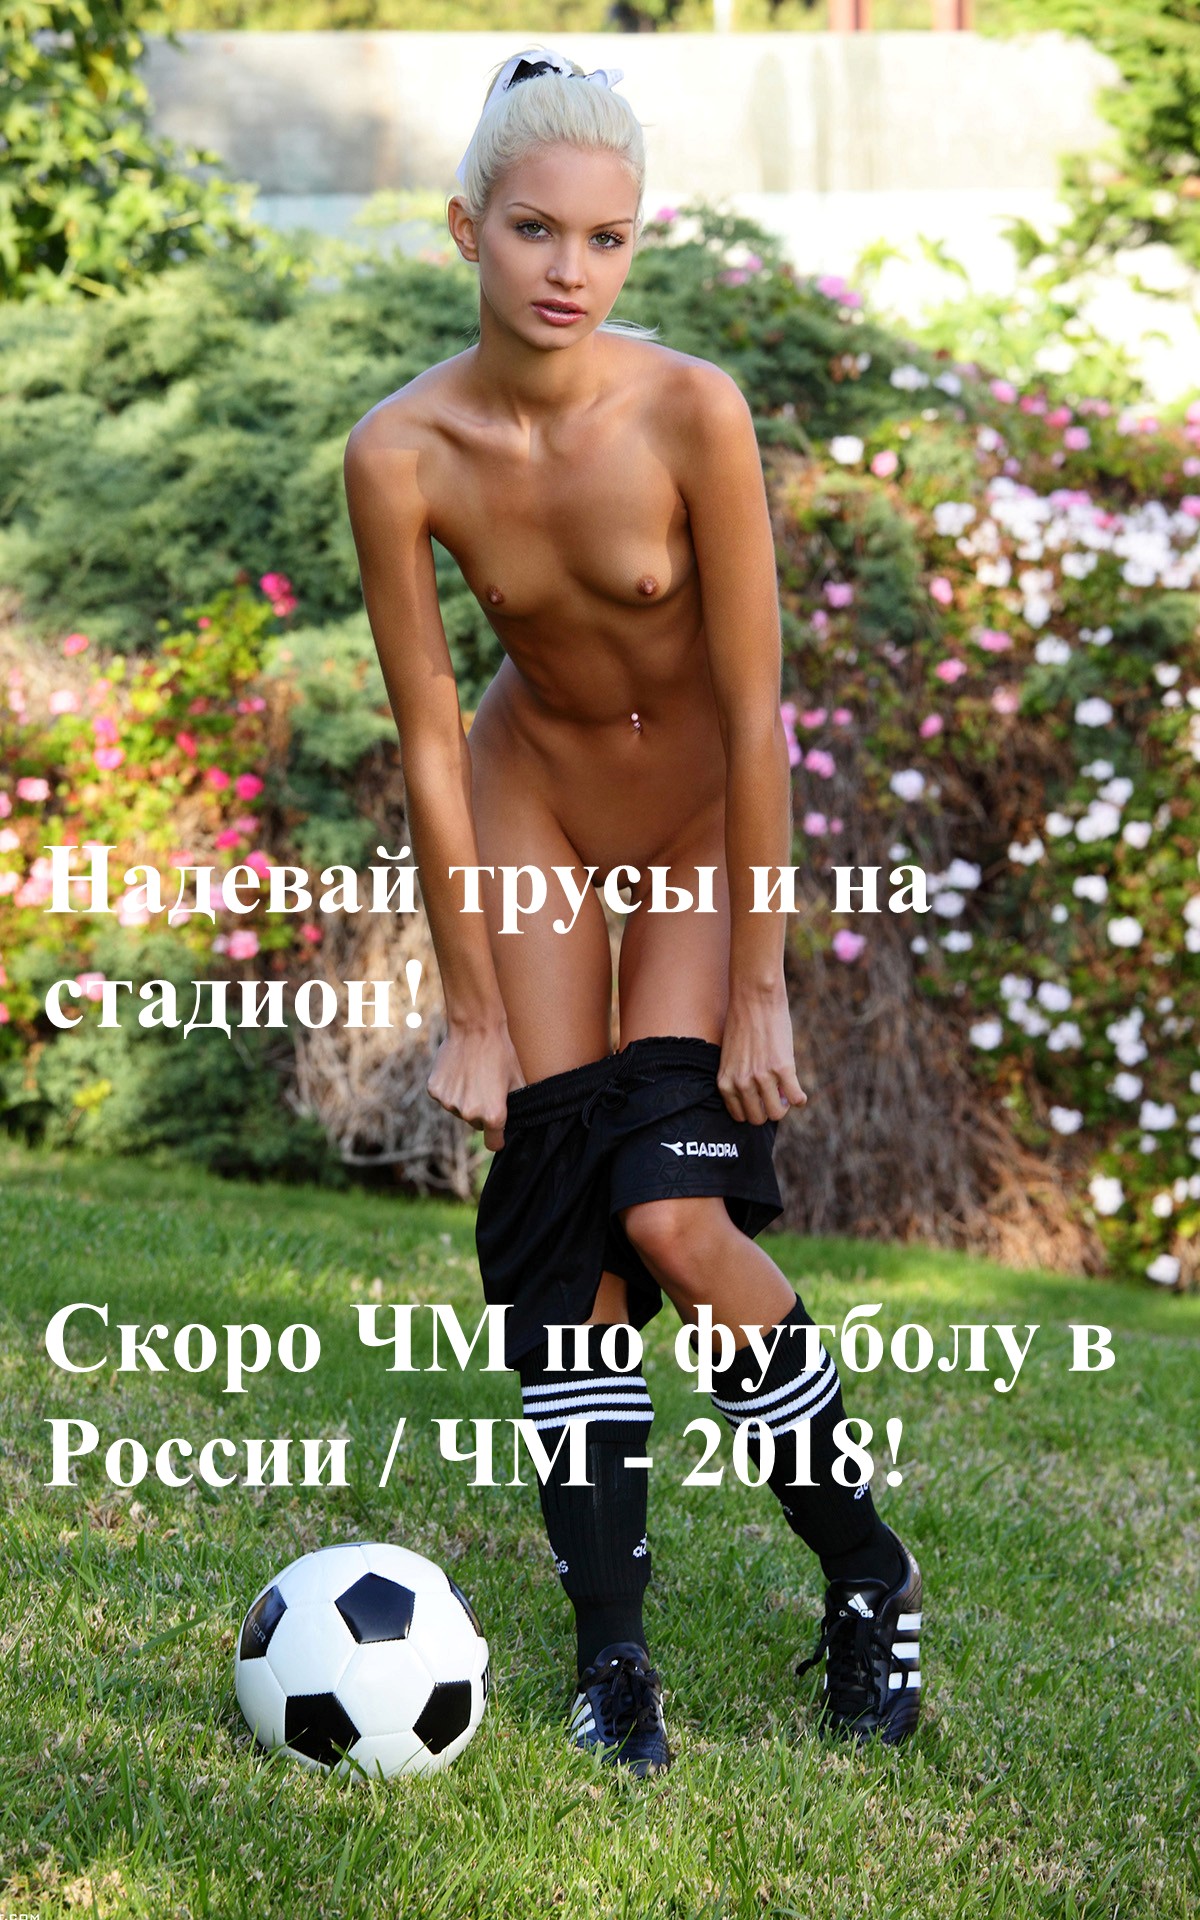 http://i72.fastpic.ru/big/2015/0603/75/113d405d3b593a1e7a9fb4e7f3ba8775.jpg